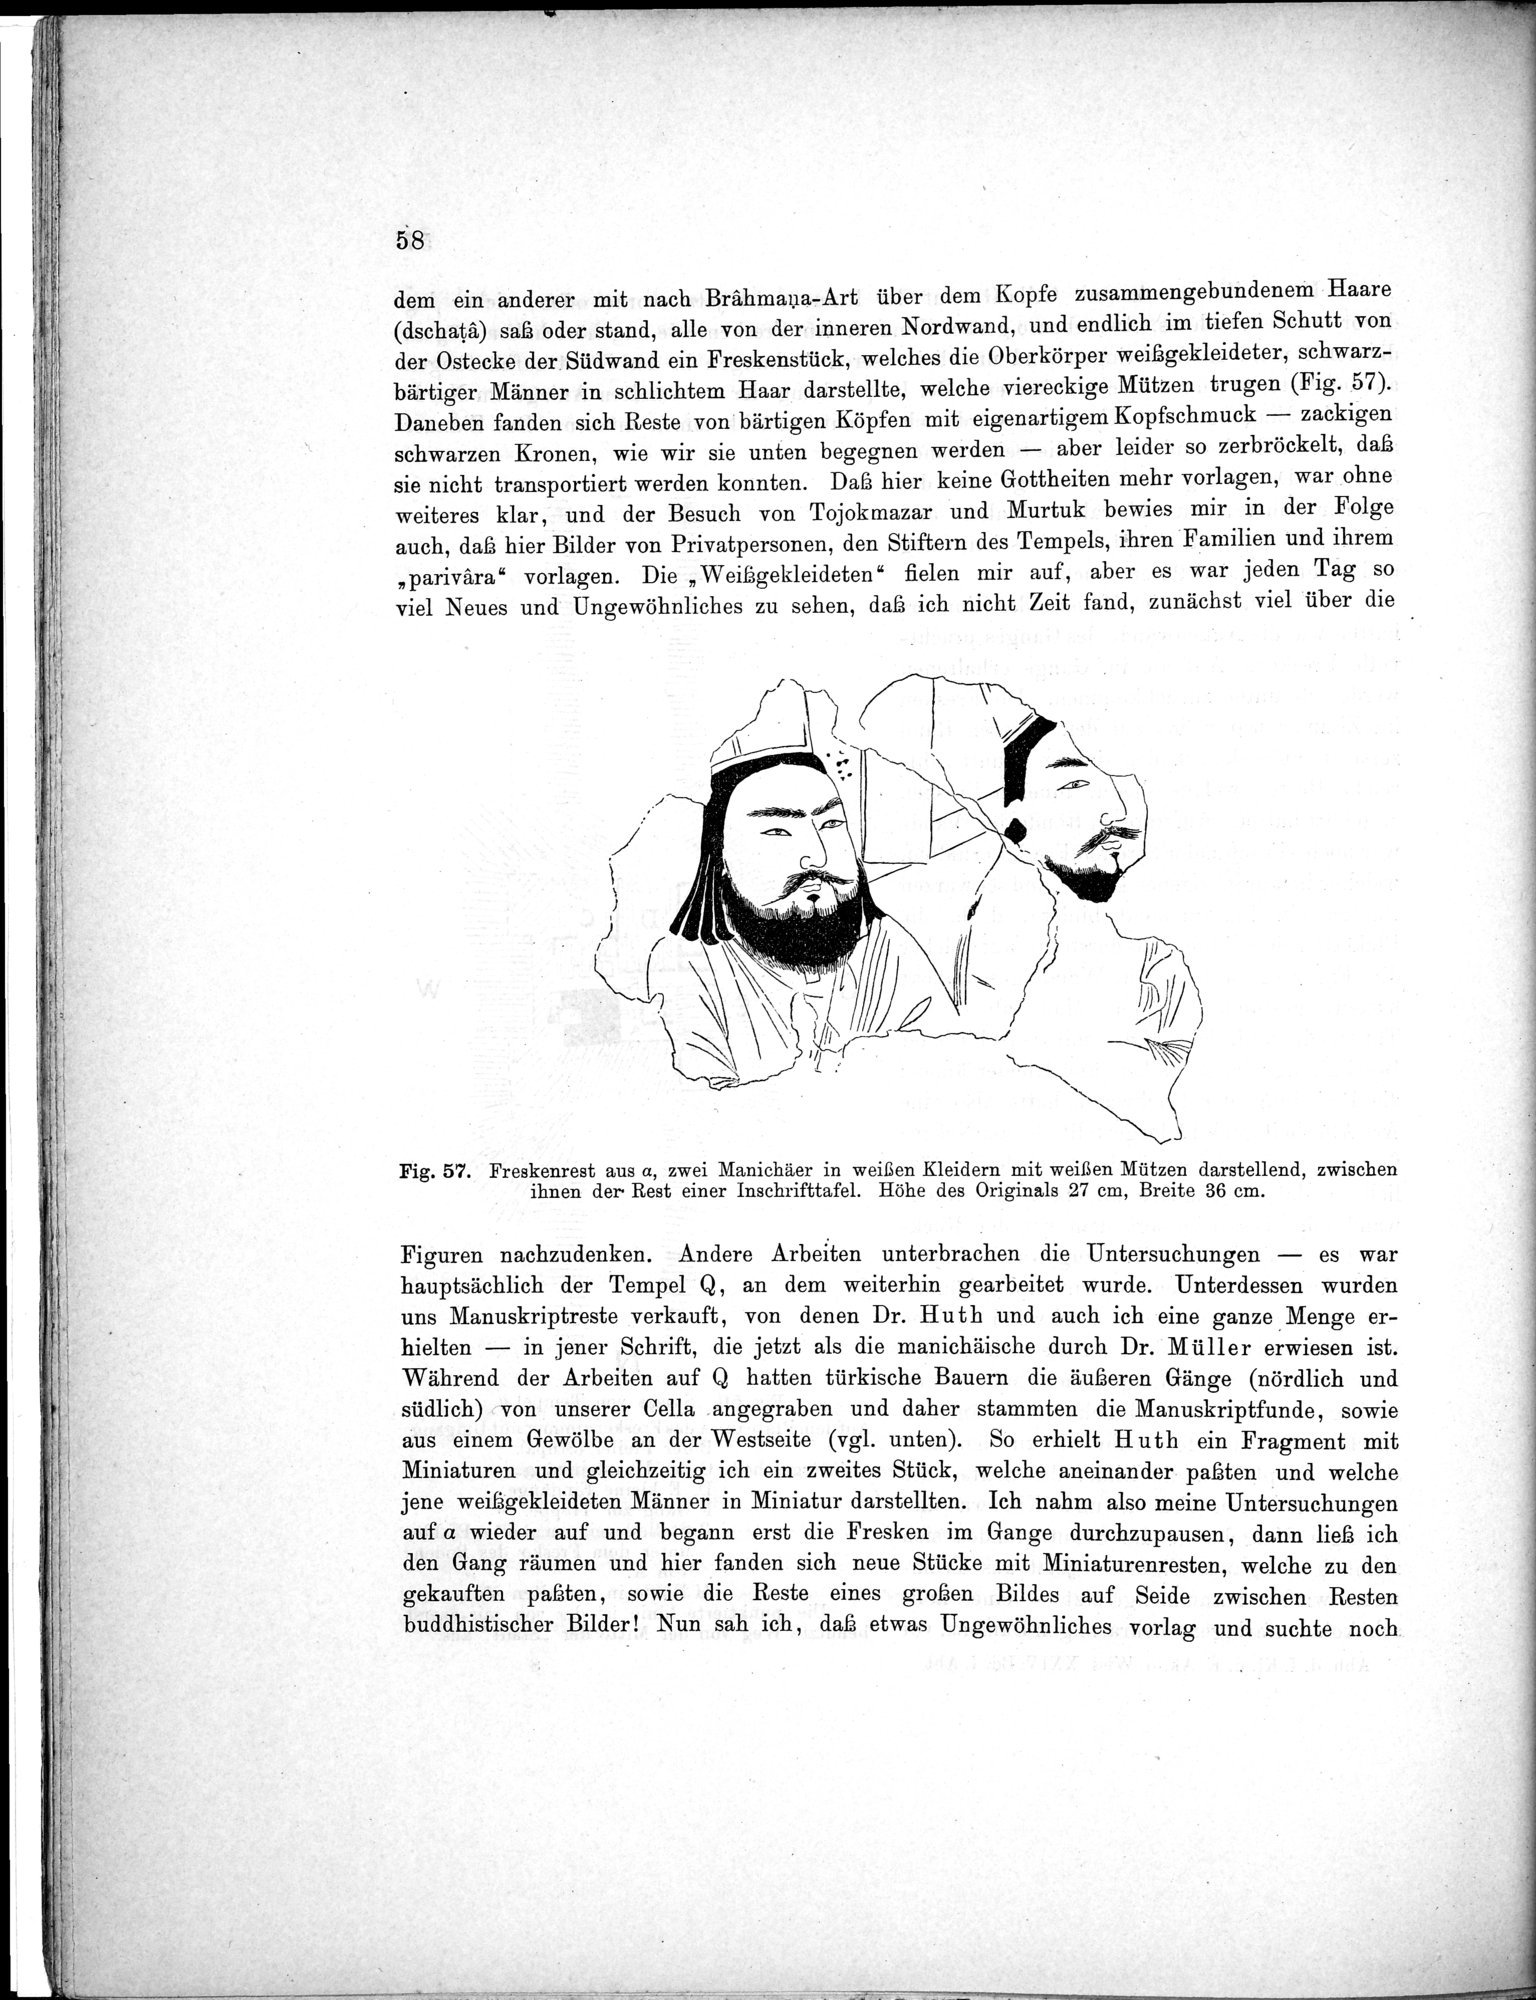 Bericht über archäologische Arbeiten in Idikutschari und Umgebung im Winter 1902-1903 : vol.1 / Page 68 (Grayscale High Resolution Image)